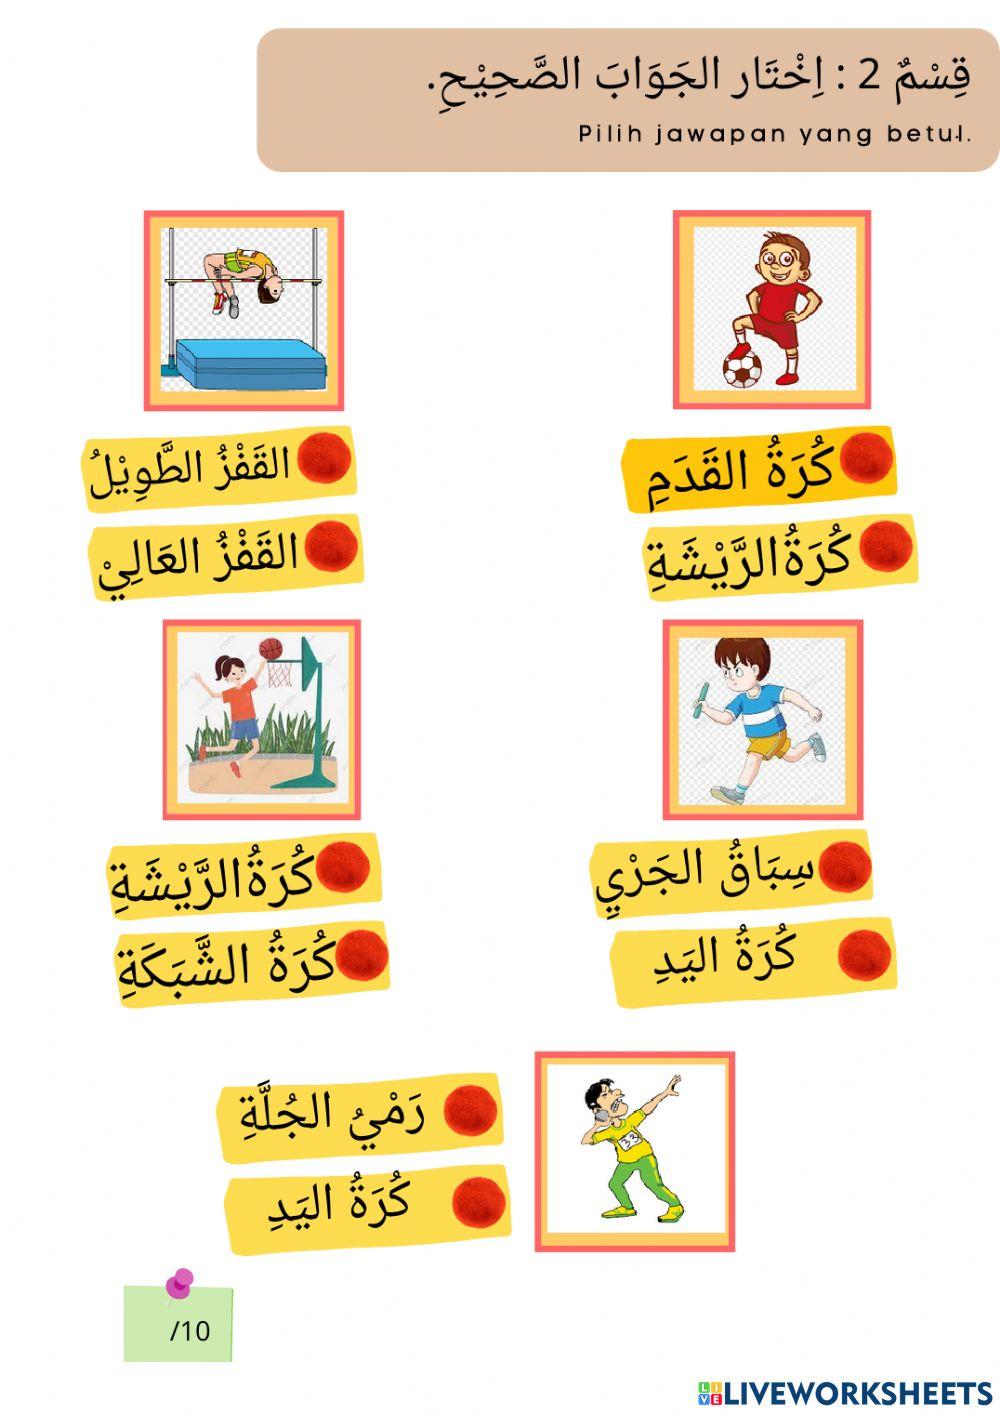 Pentaksiran sumatif bahasa arab tahun 5 bab 3